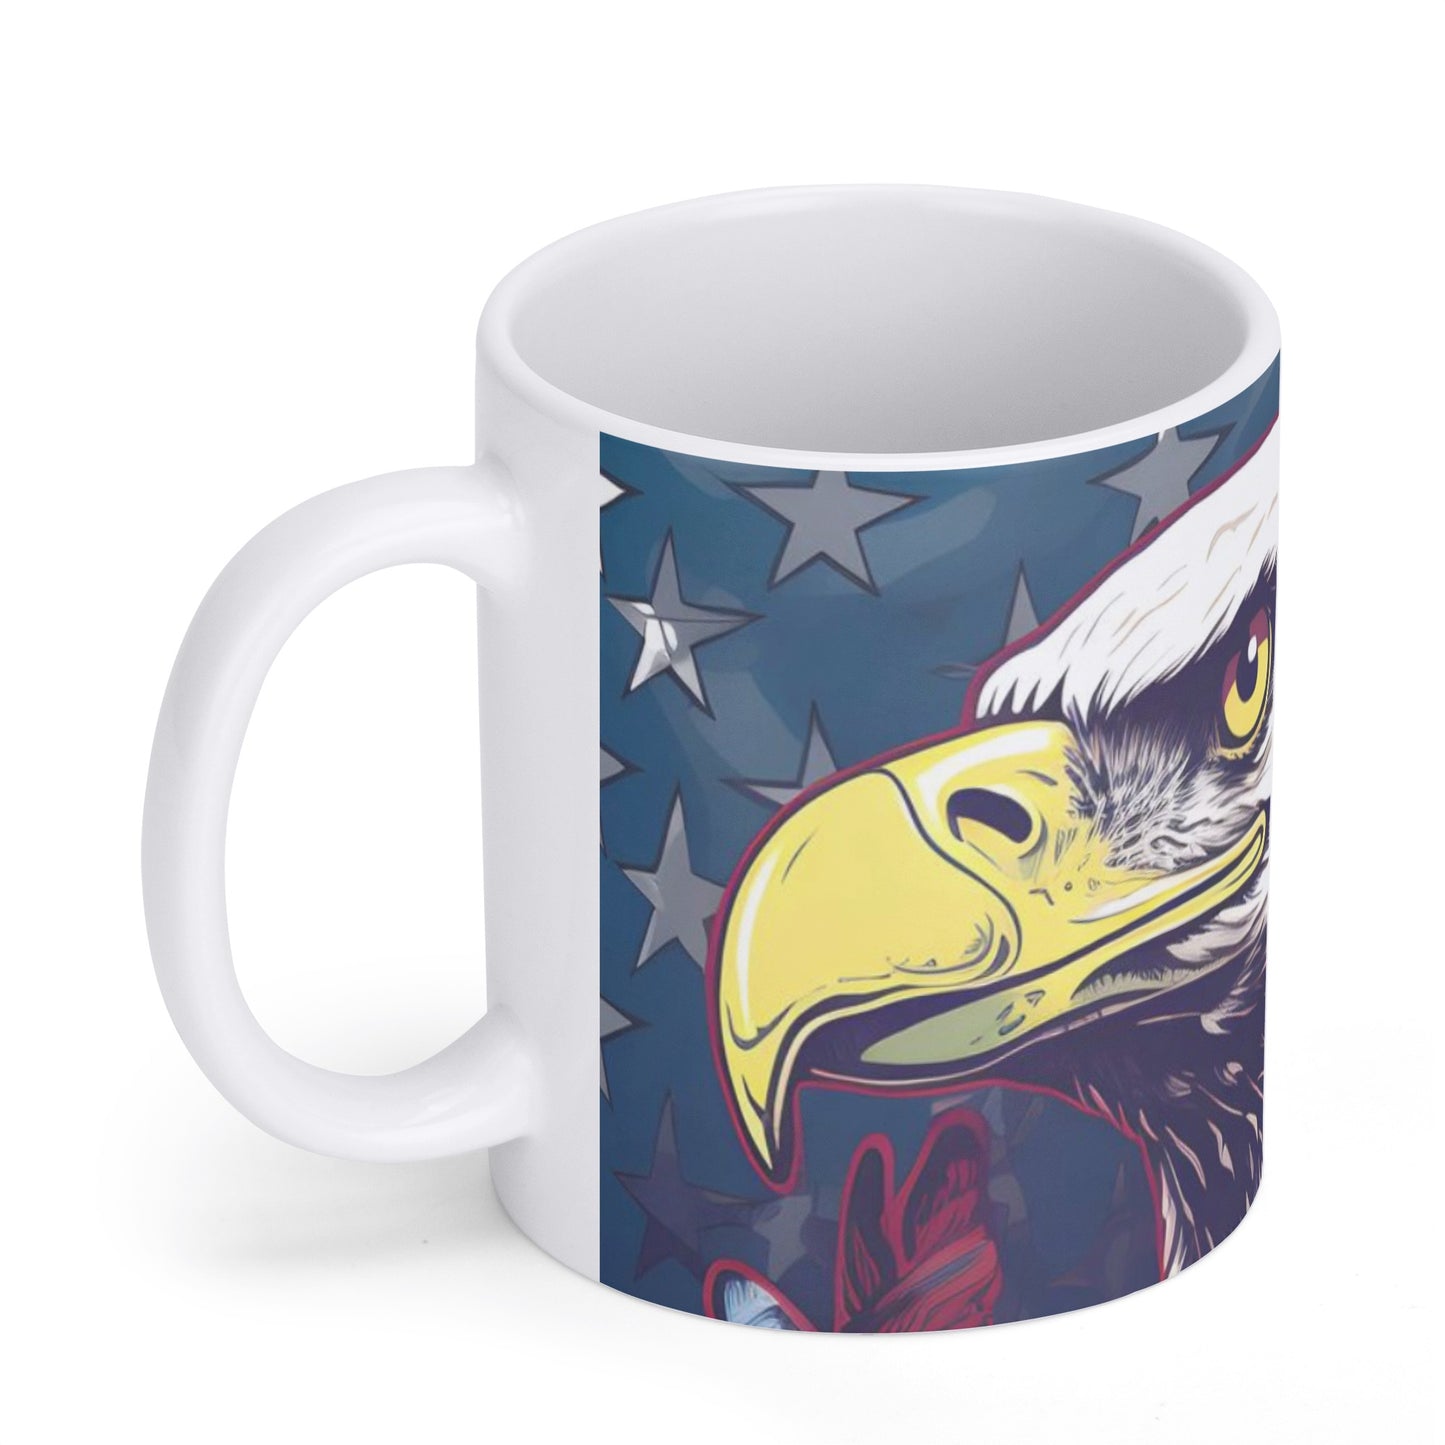 American eagle Mug